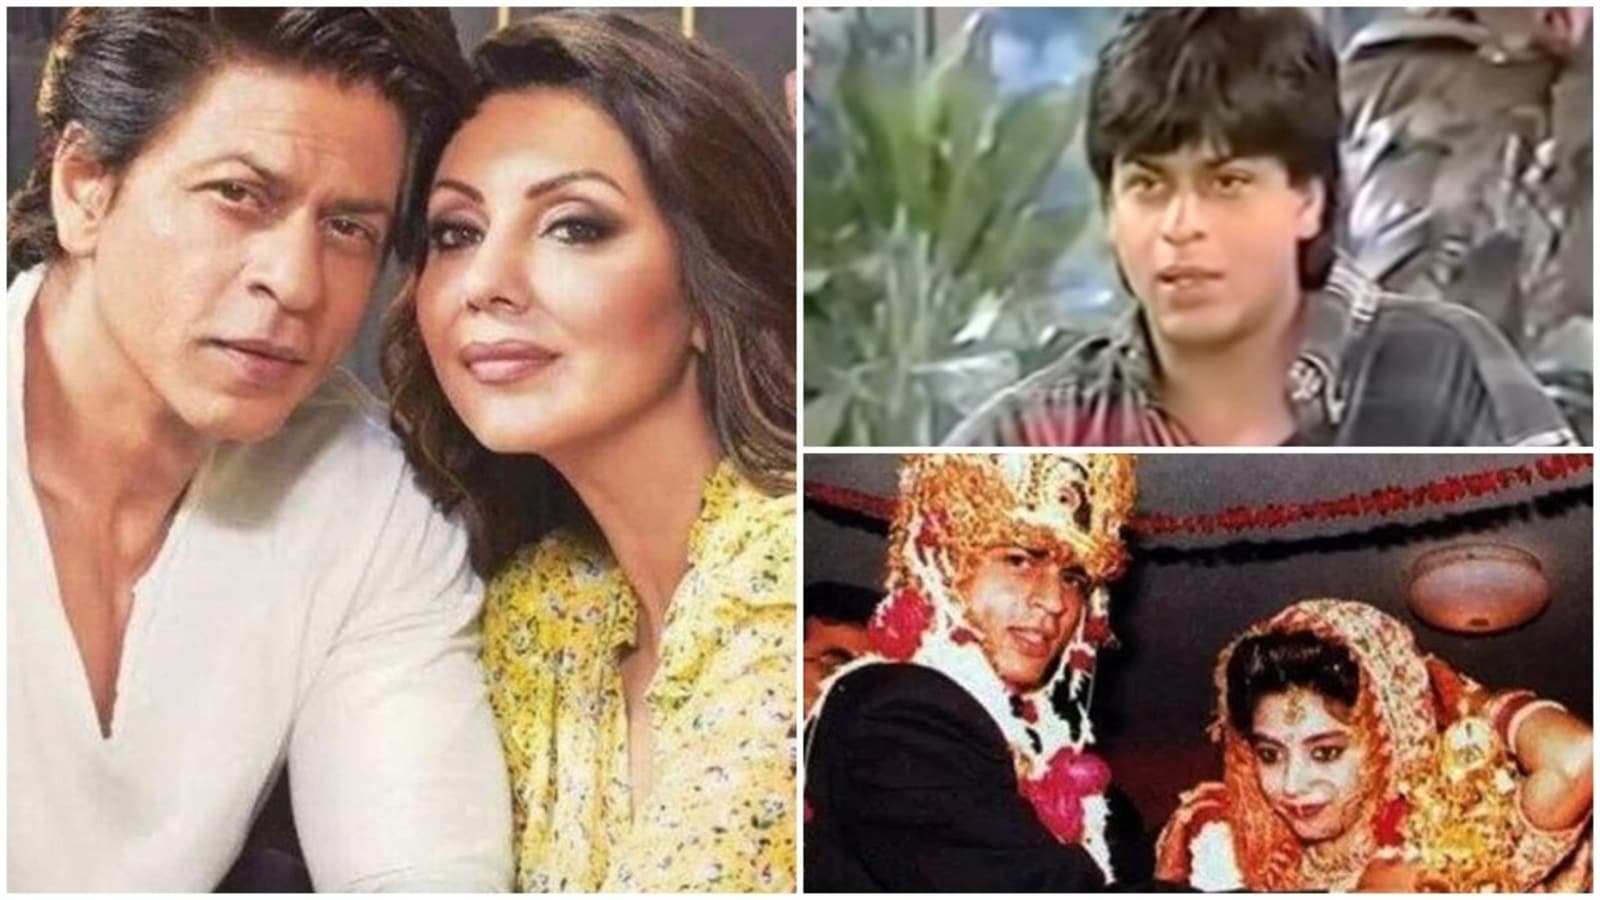 When Shah Rukh Khan trolled in-laws on wedding day: 'Chalo Gauri ...